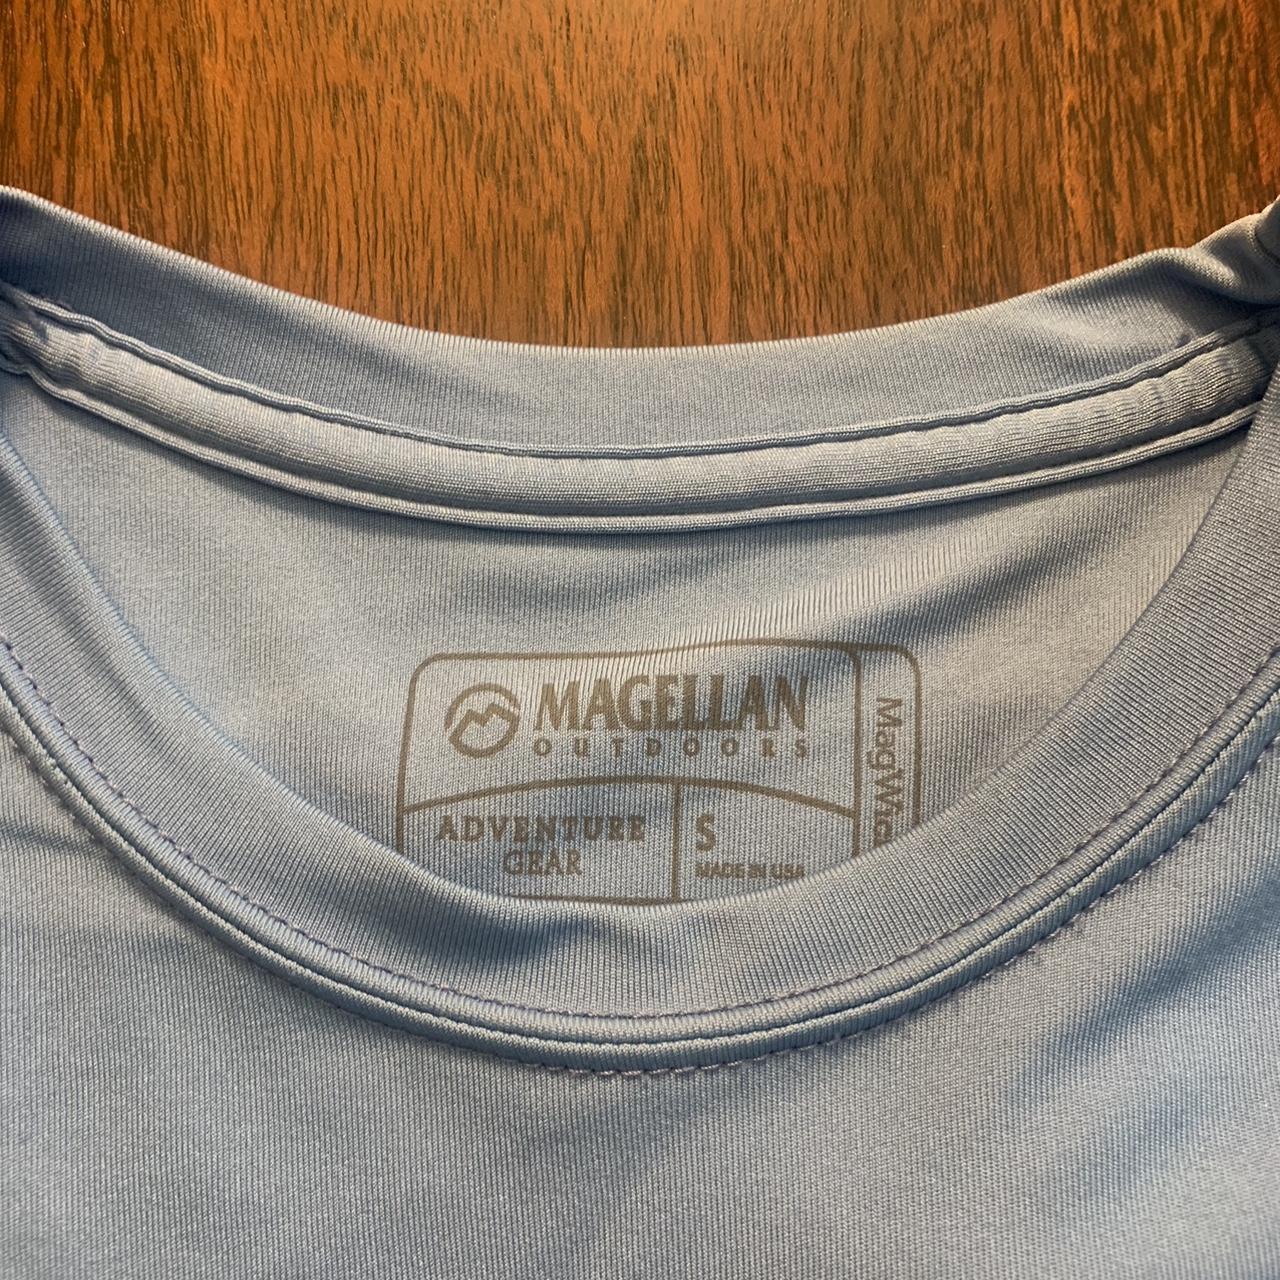 Magellan Men's Blue and Navy Shirt | Depop